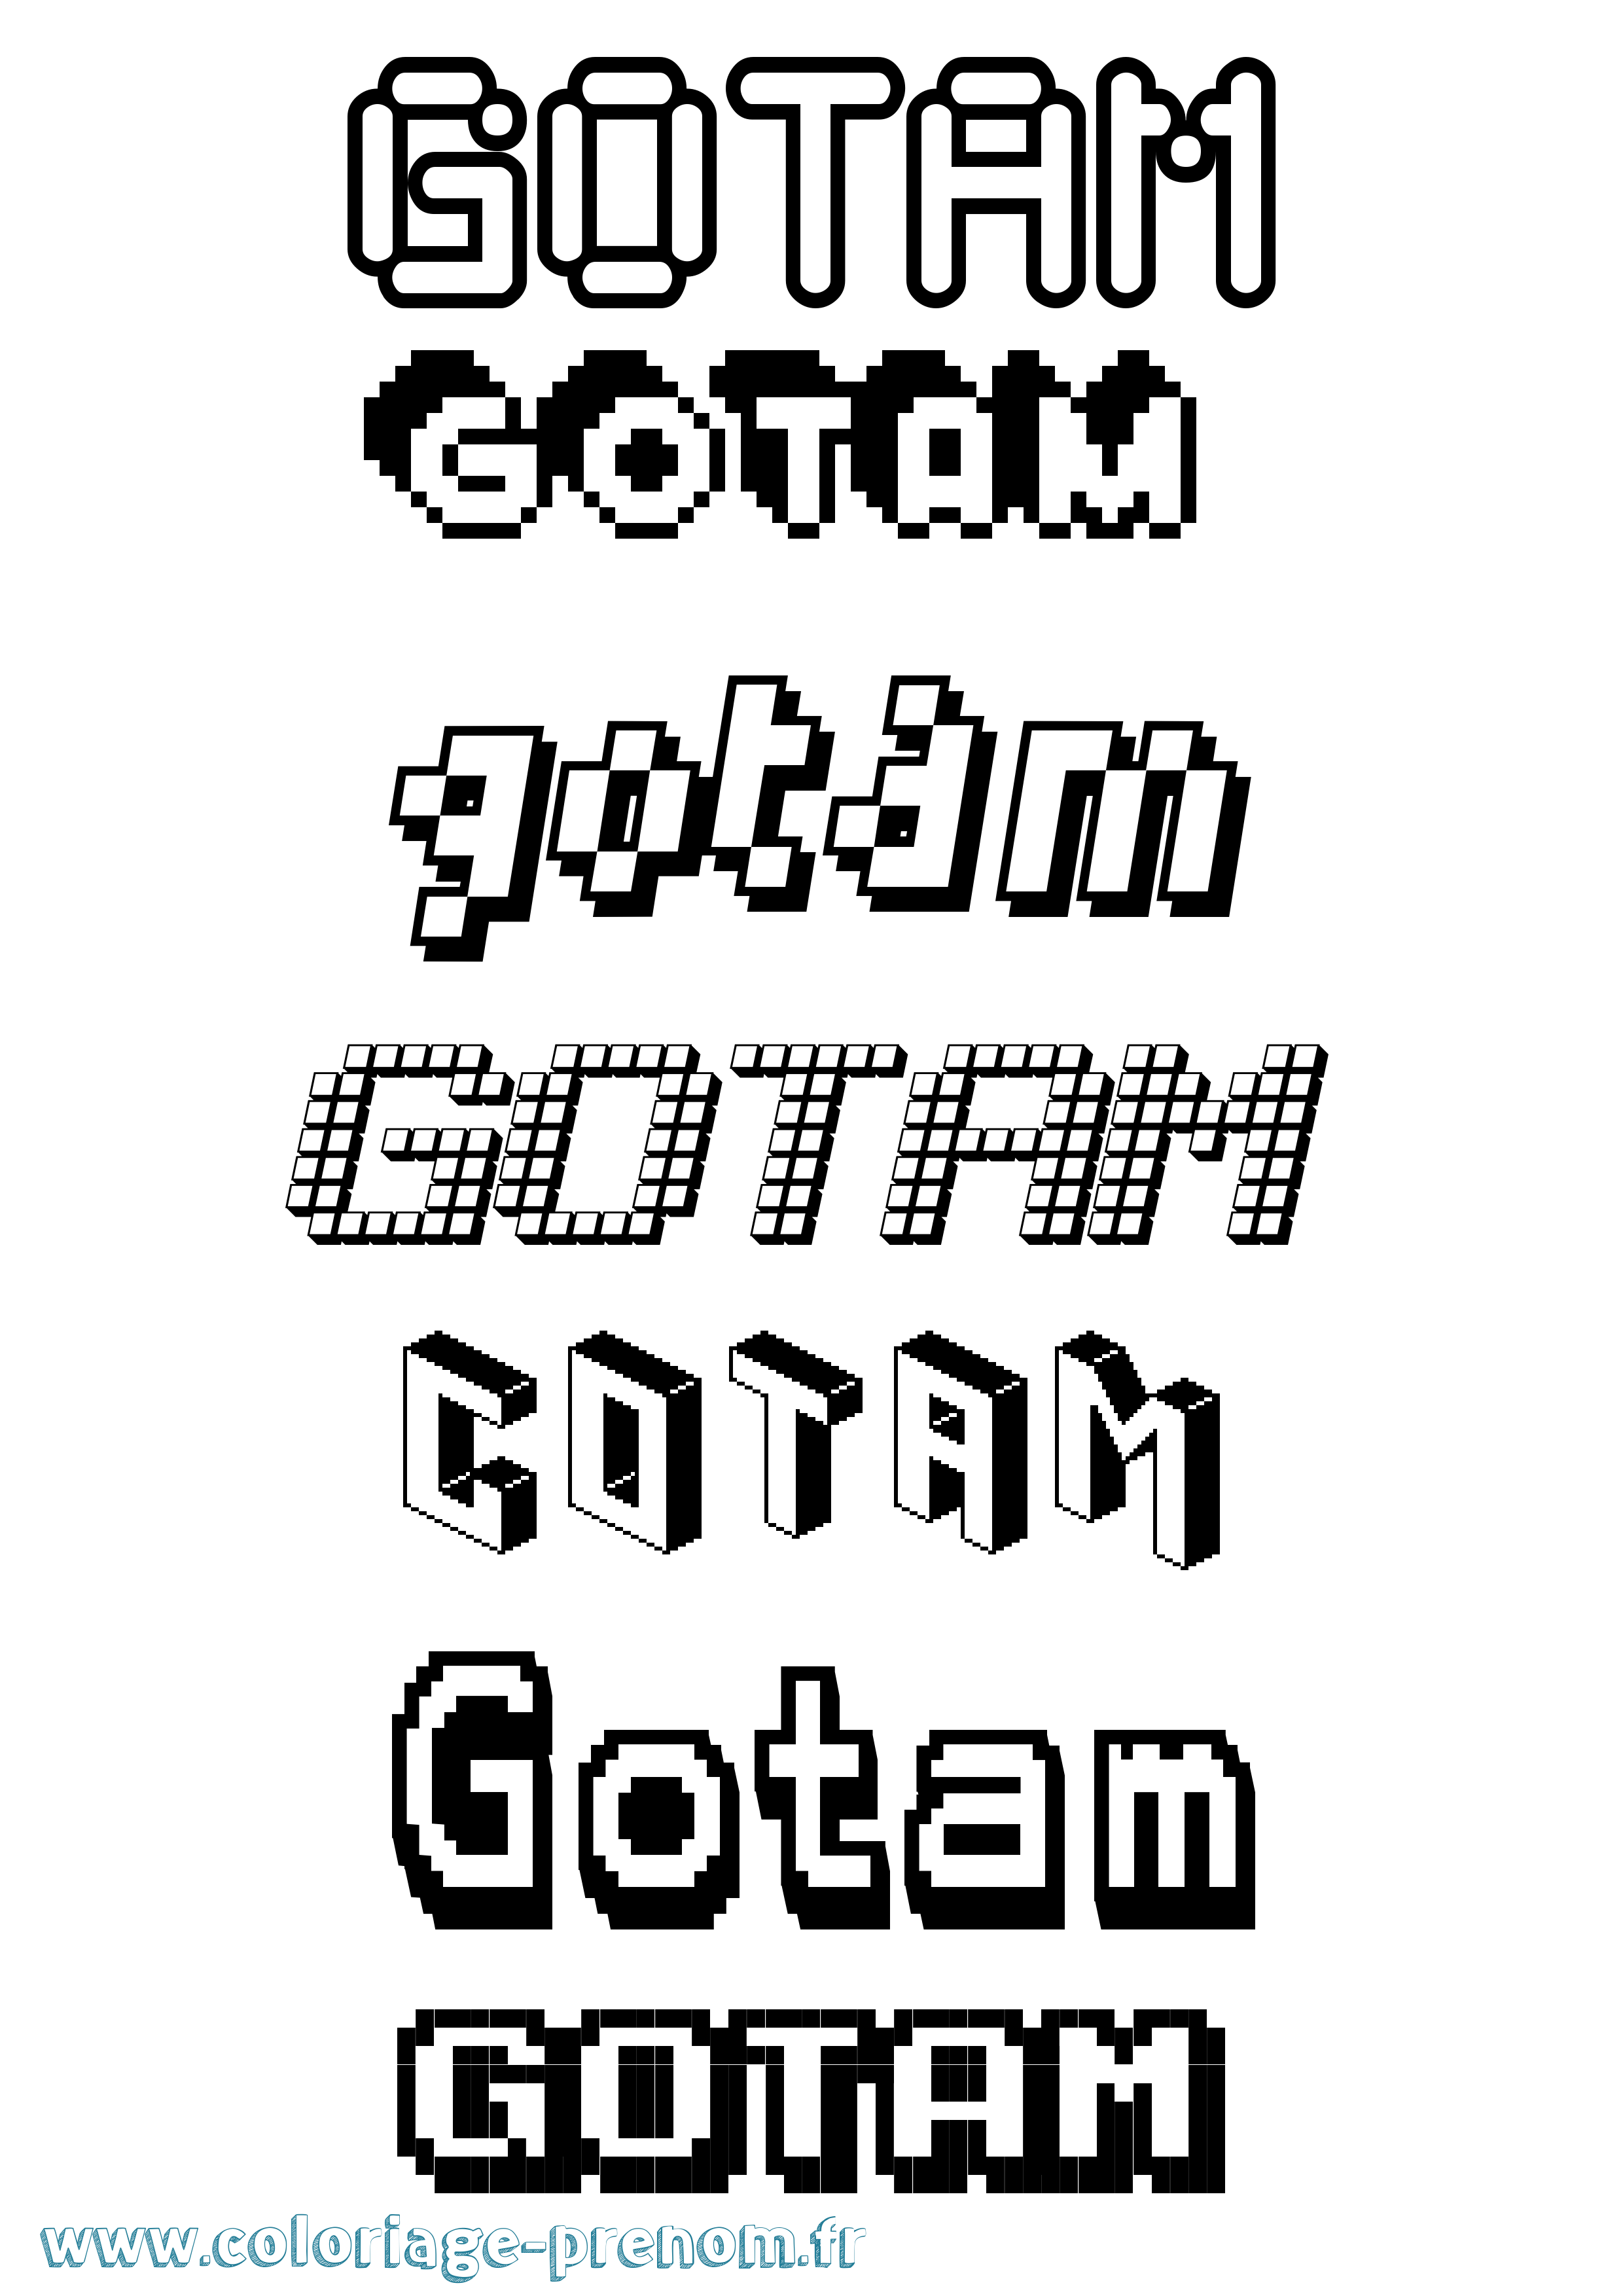 Coloriage prénom Gotam Pixel